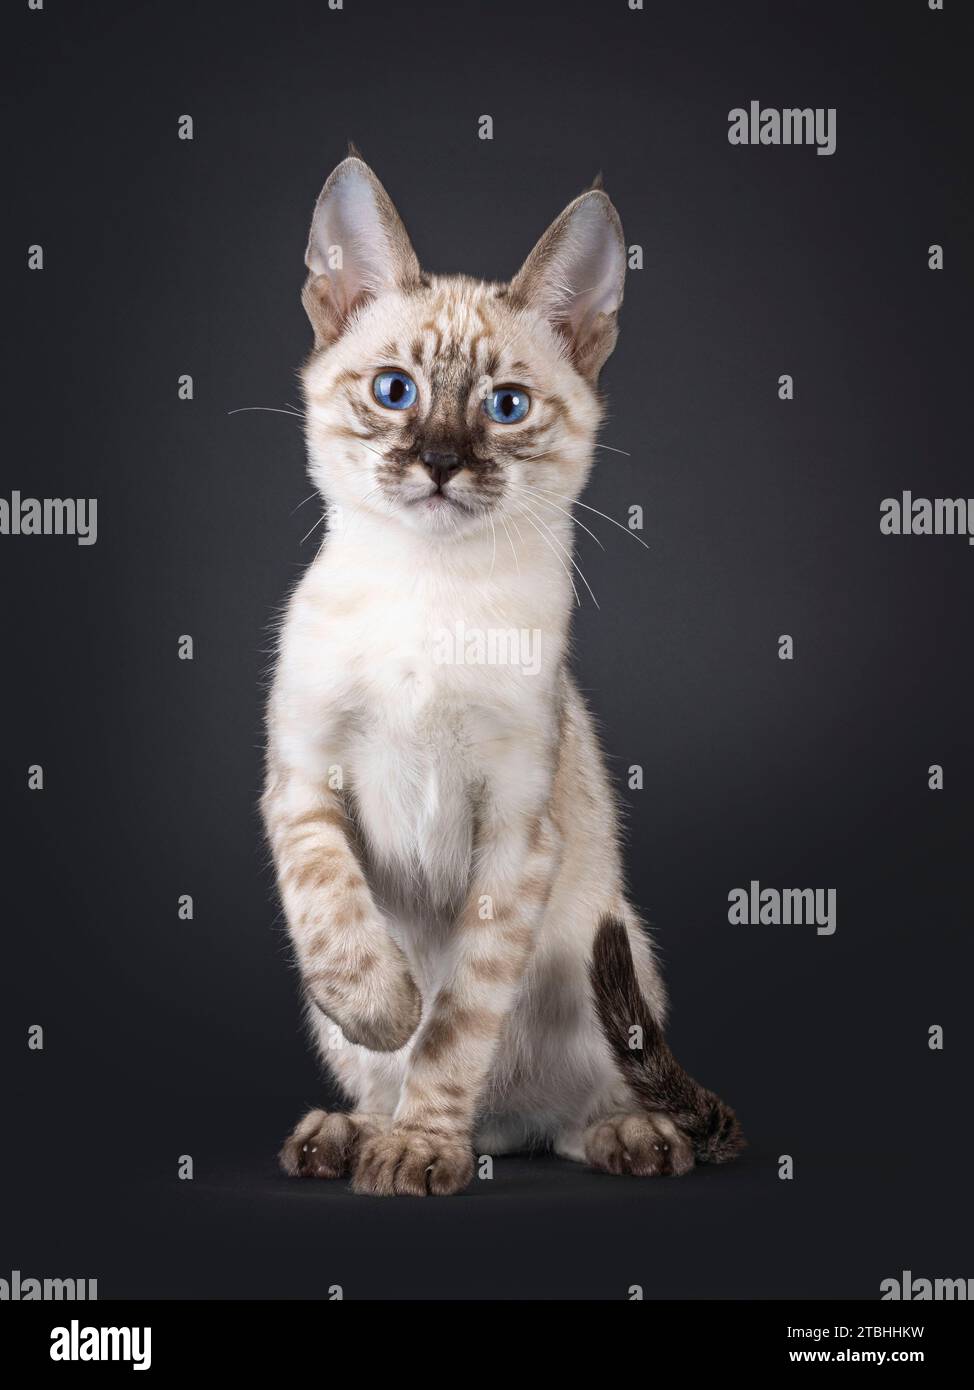 Mink F6 gattino Savannah, seduto di fronte. Guardando verso la fotocamera con gli occhi blu. Isolato su sfondo nero. Foto Stock